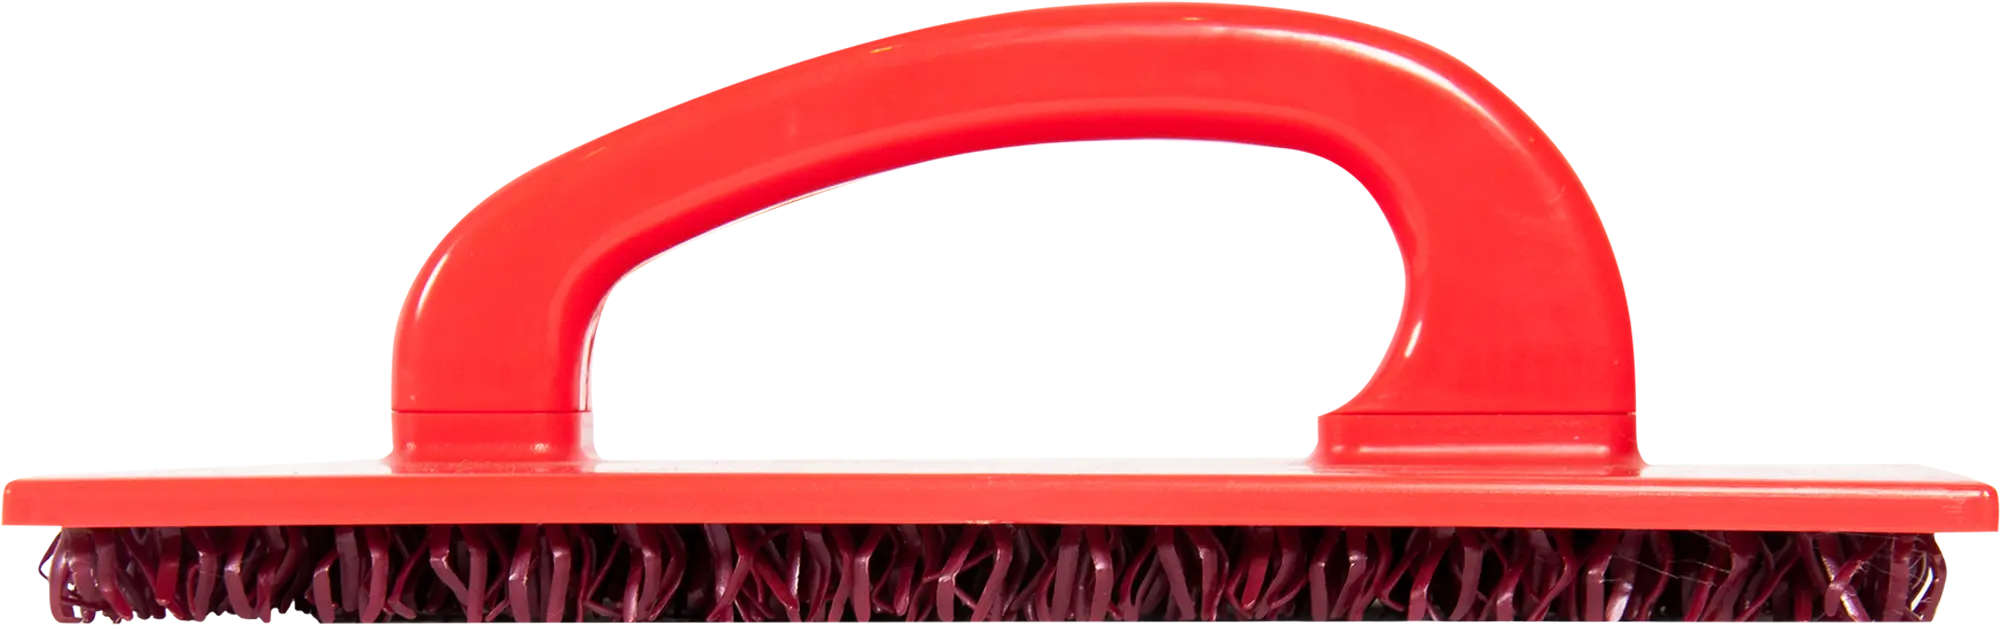 Щетка пластиковая для декора Pqtools, 235х135 мм щетка для мытья колес мягкий ворс 24 см красный